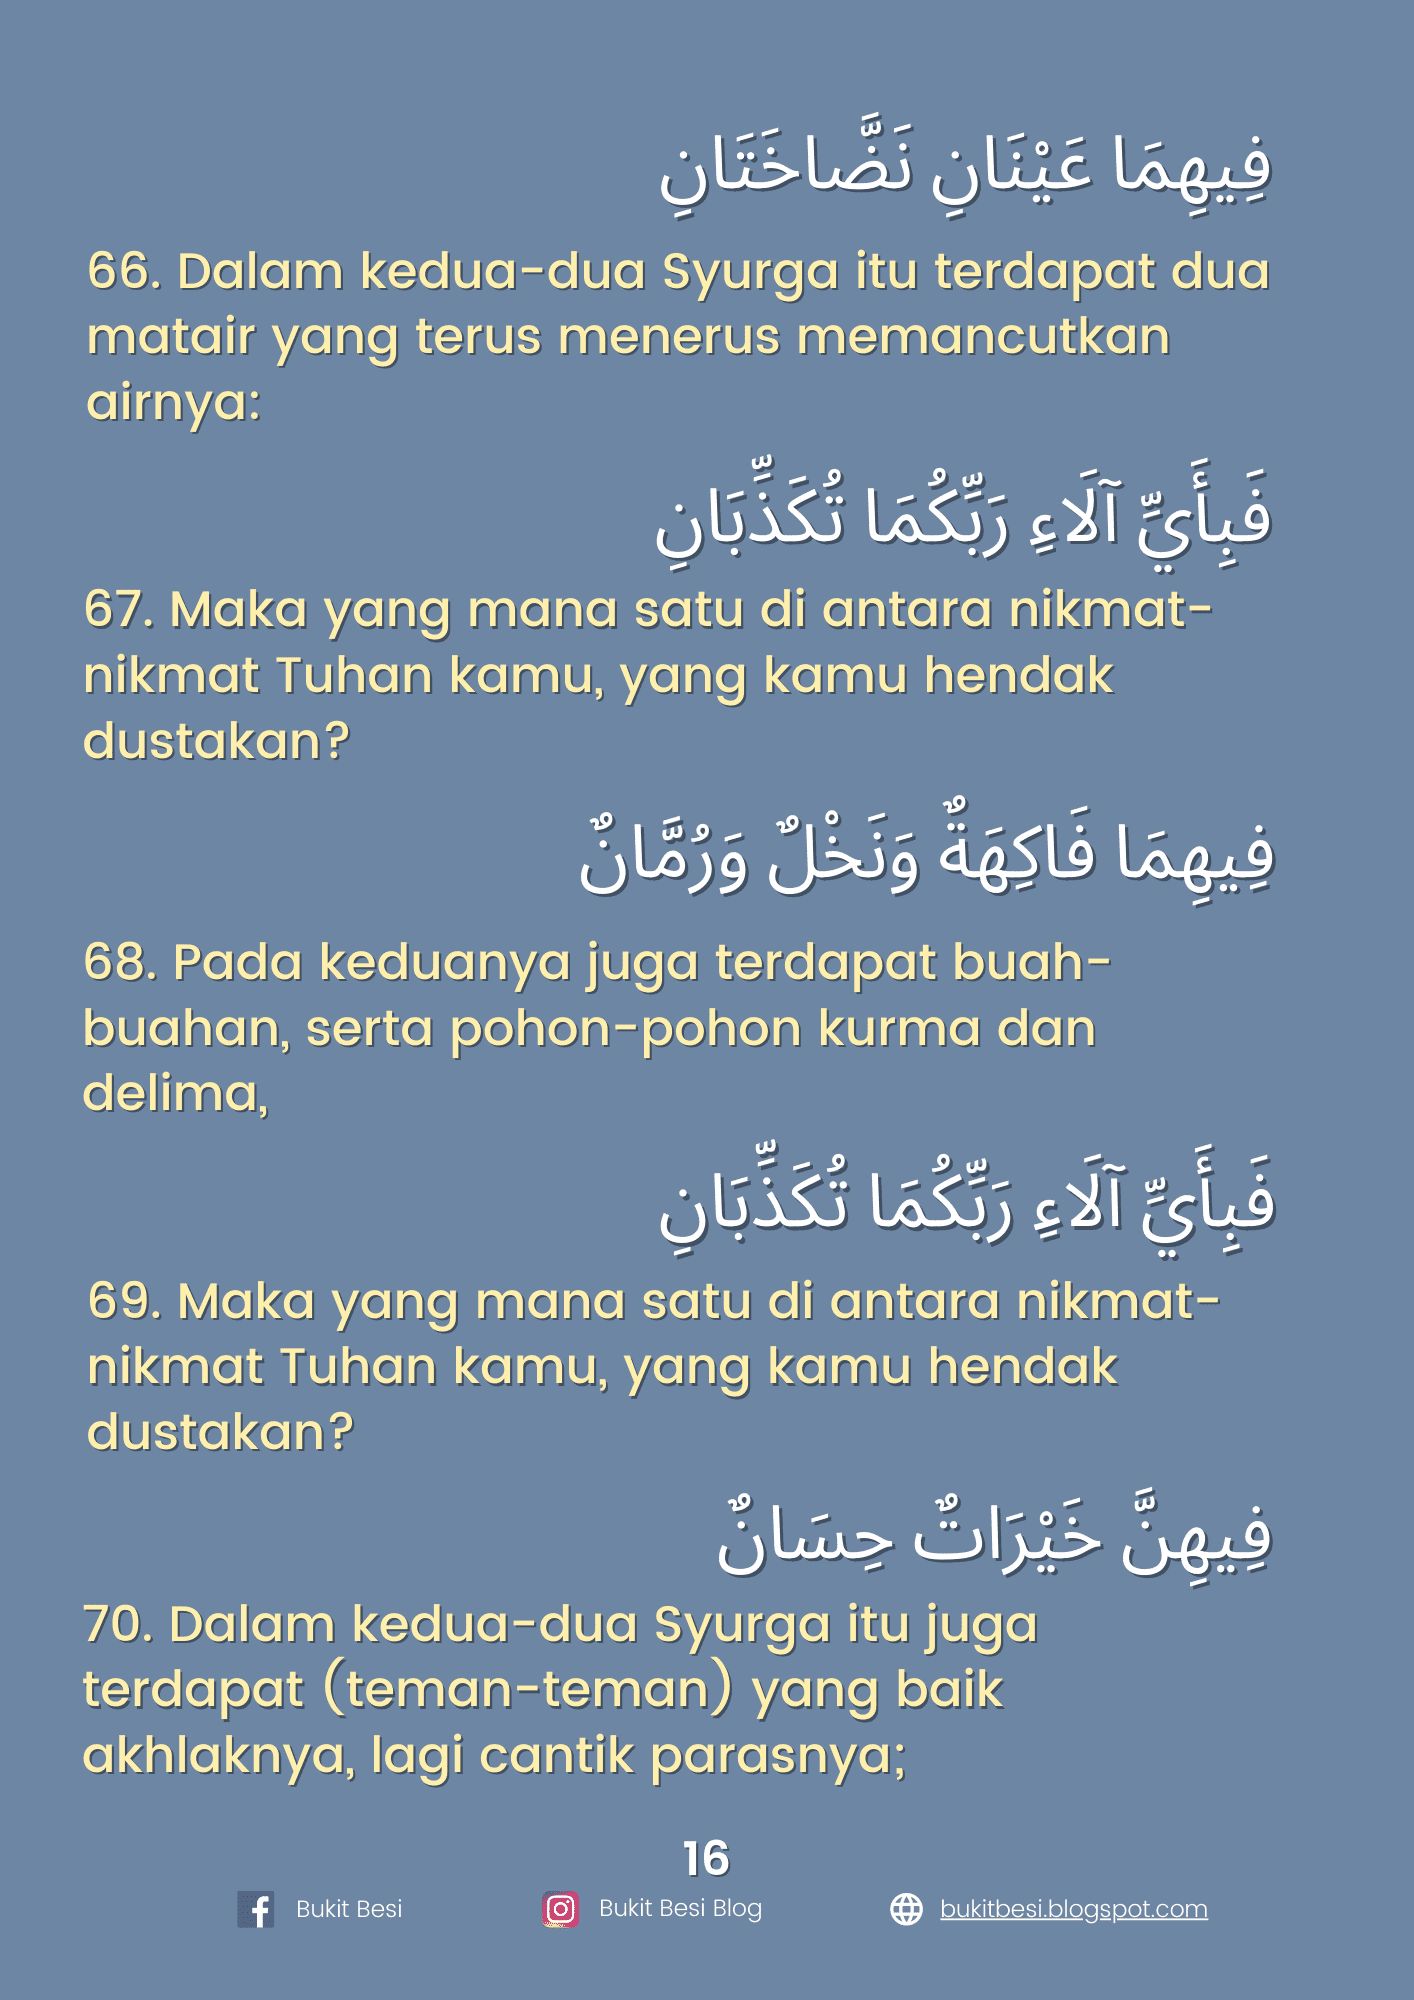 Diterjemahkan dalam Bahasa Malaysia